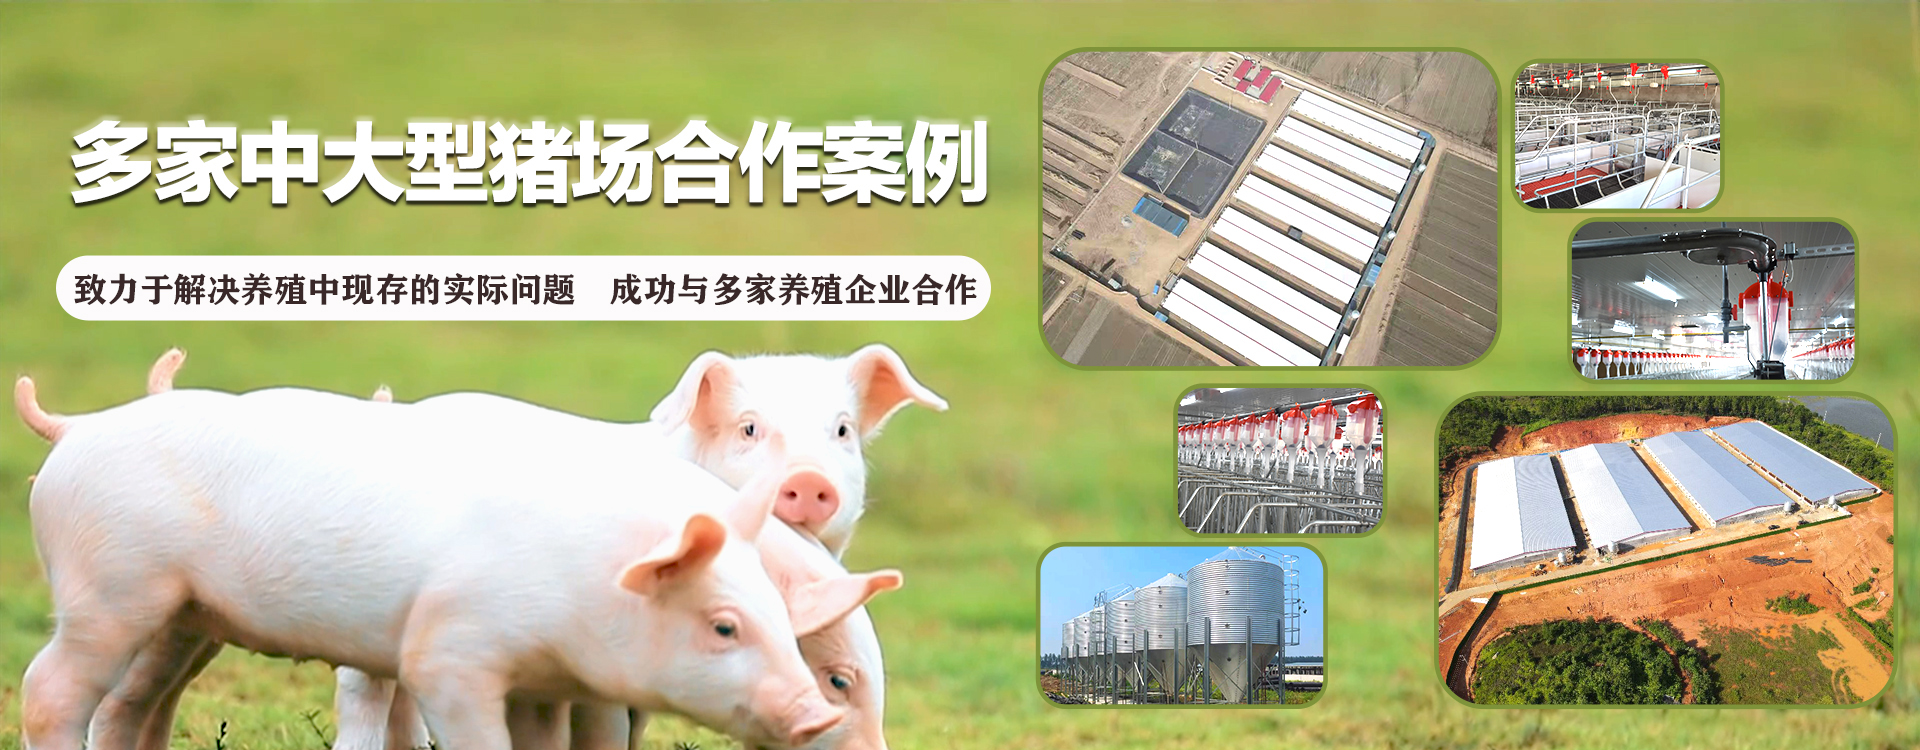 佰冠兴－自动化养猪设备厂家